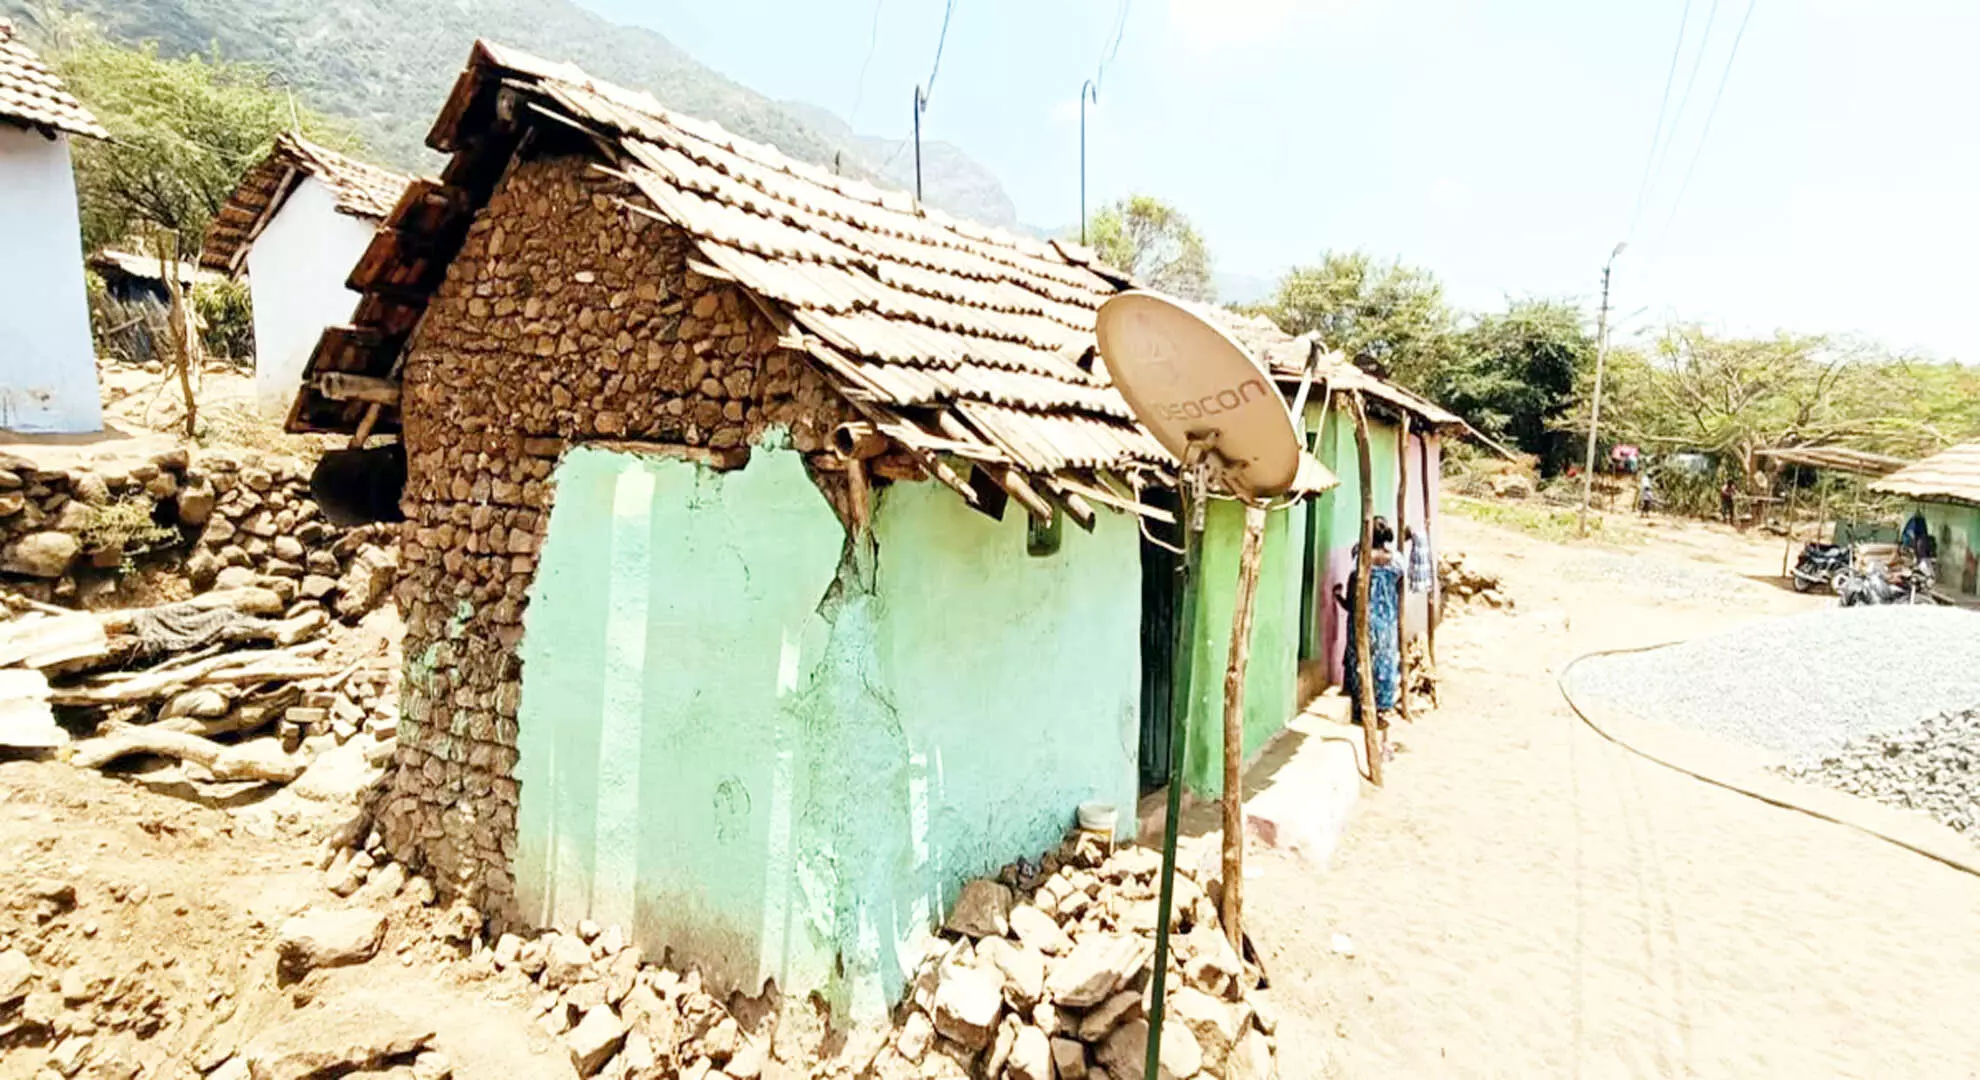 कोयंबटूर के मेल मारुथंगराई आदिवासी गांव में अभी भी बुनियादी सुविधाएं नहीं हैं